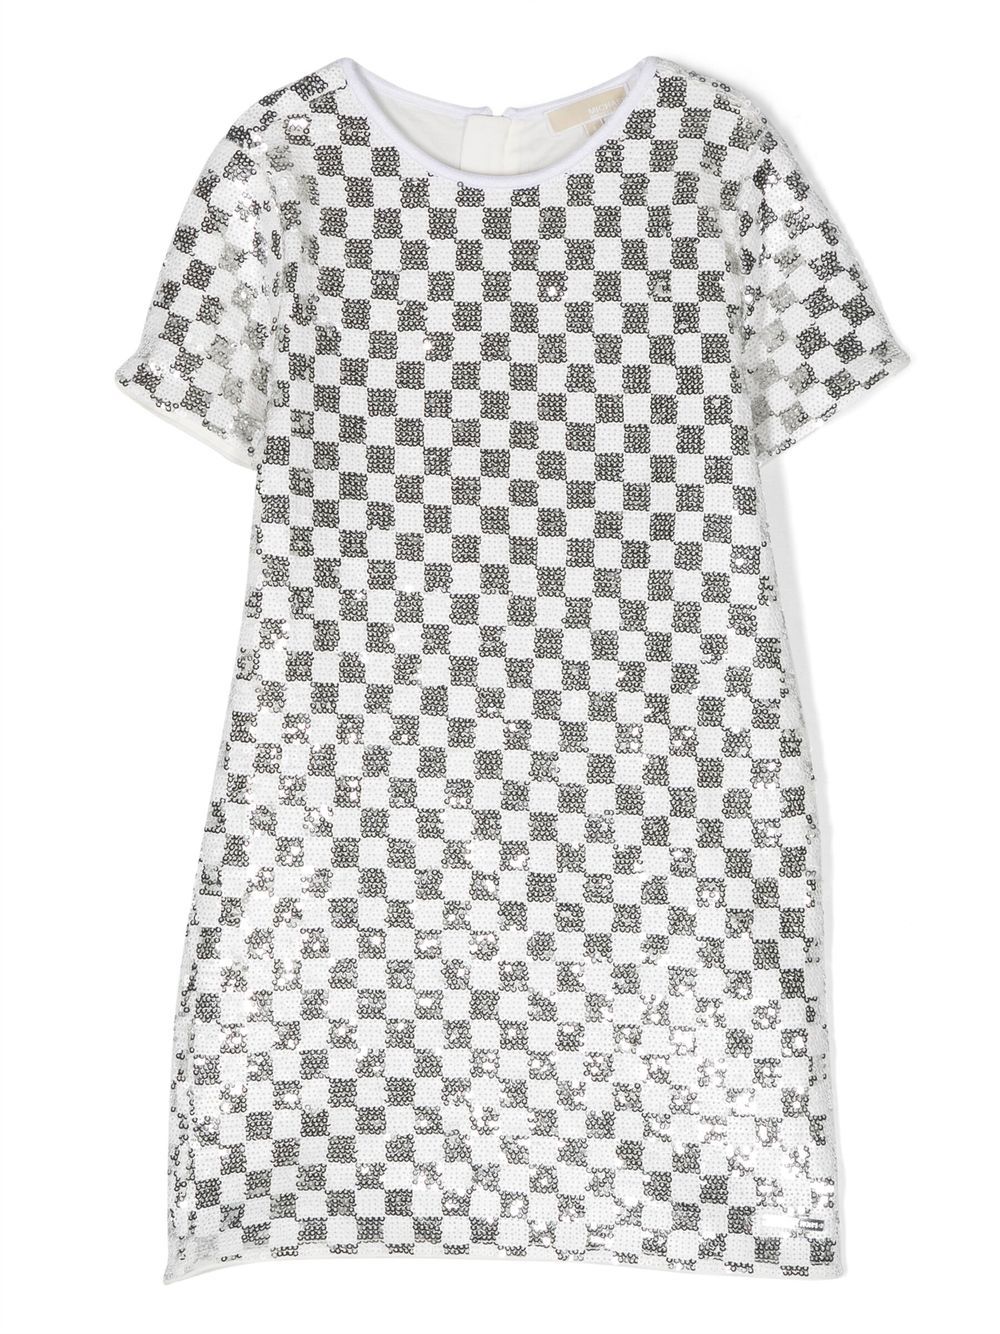 [빠른배송] 마이클코어스 키즈 체크 패턴 시퀸 드레스 R12146M31